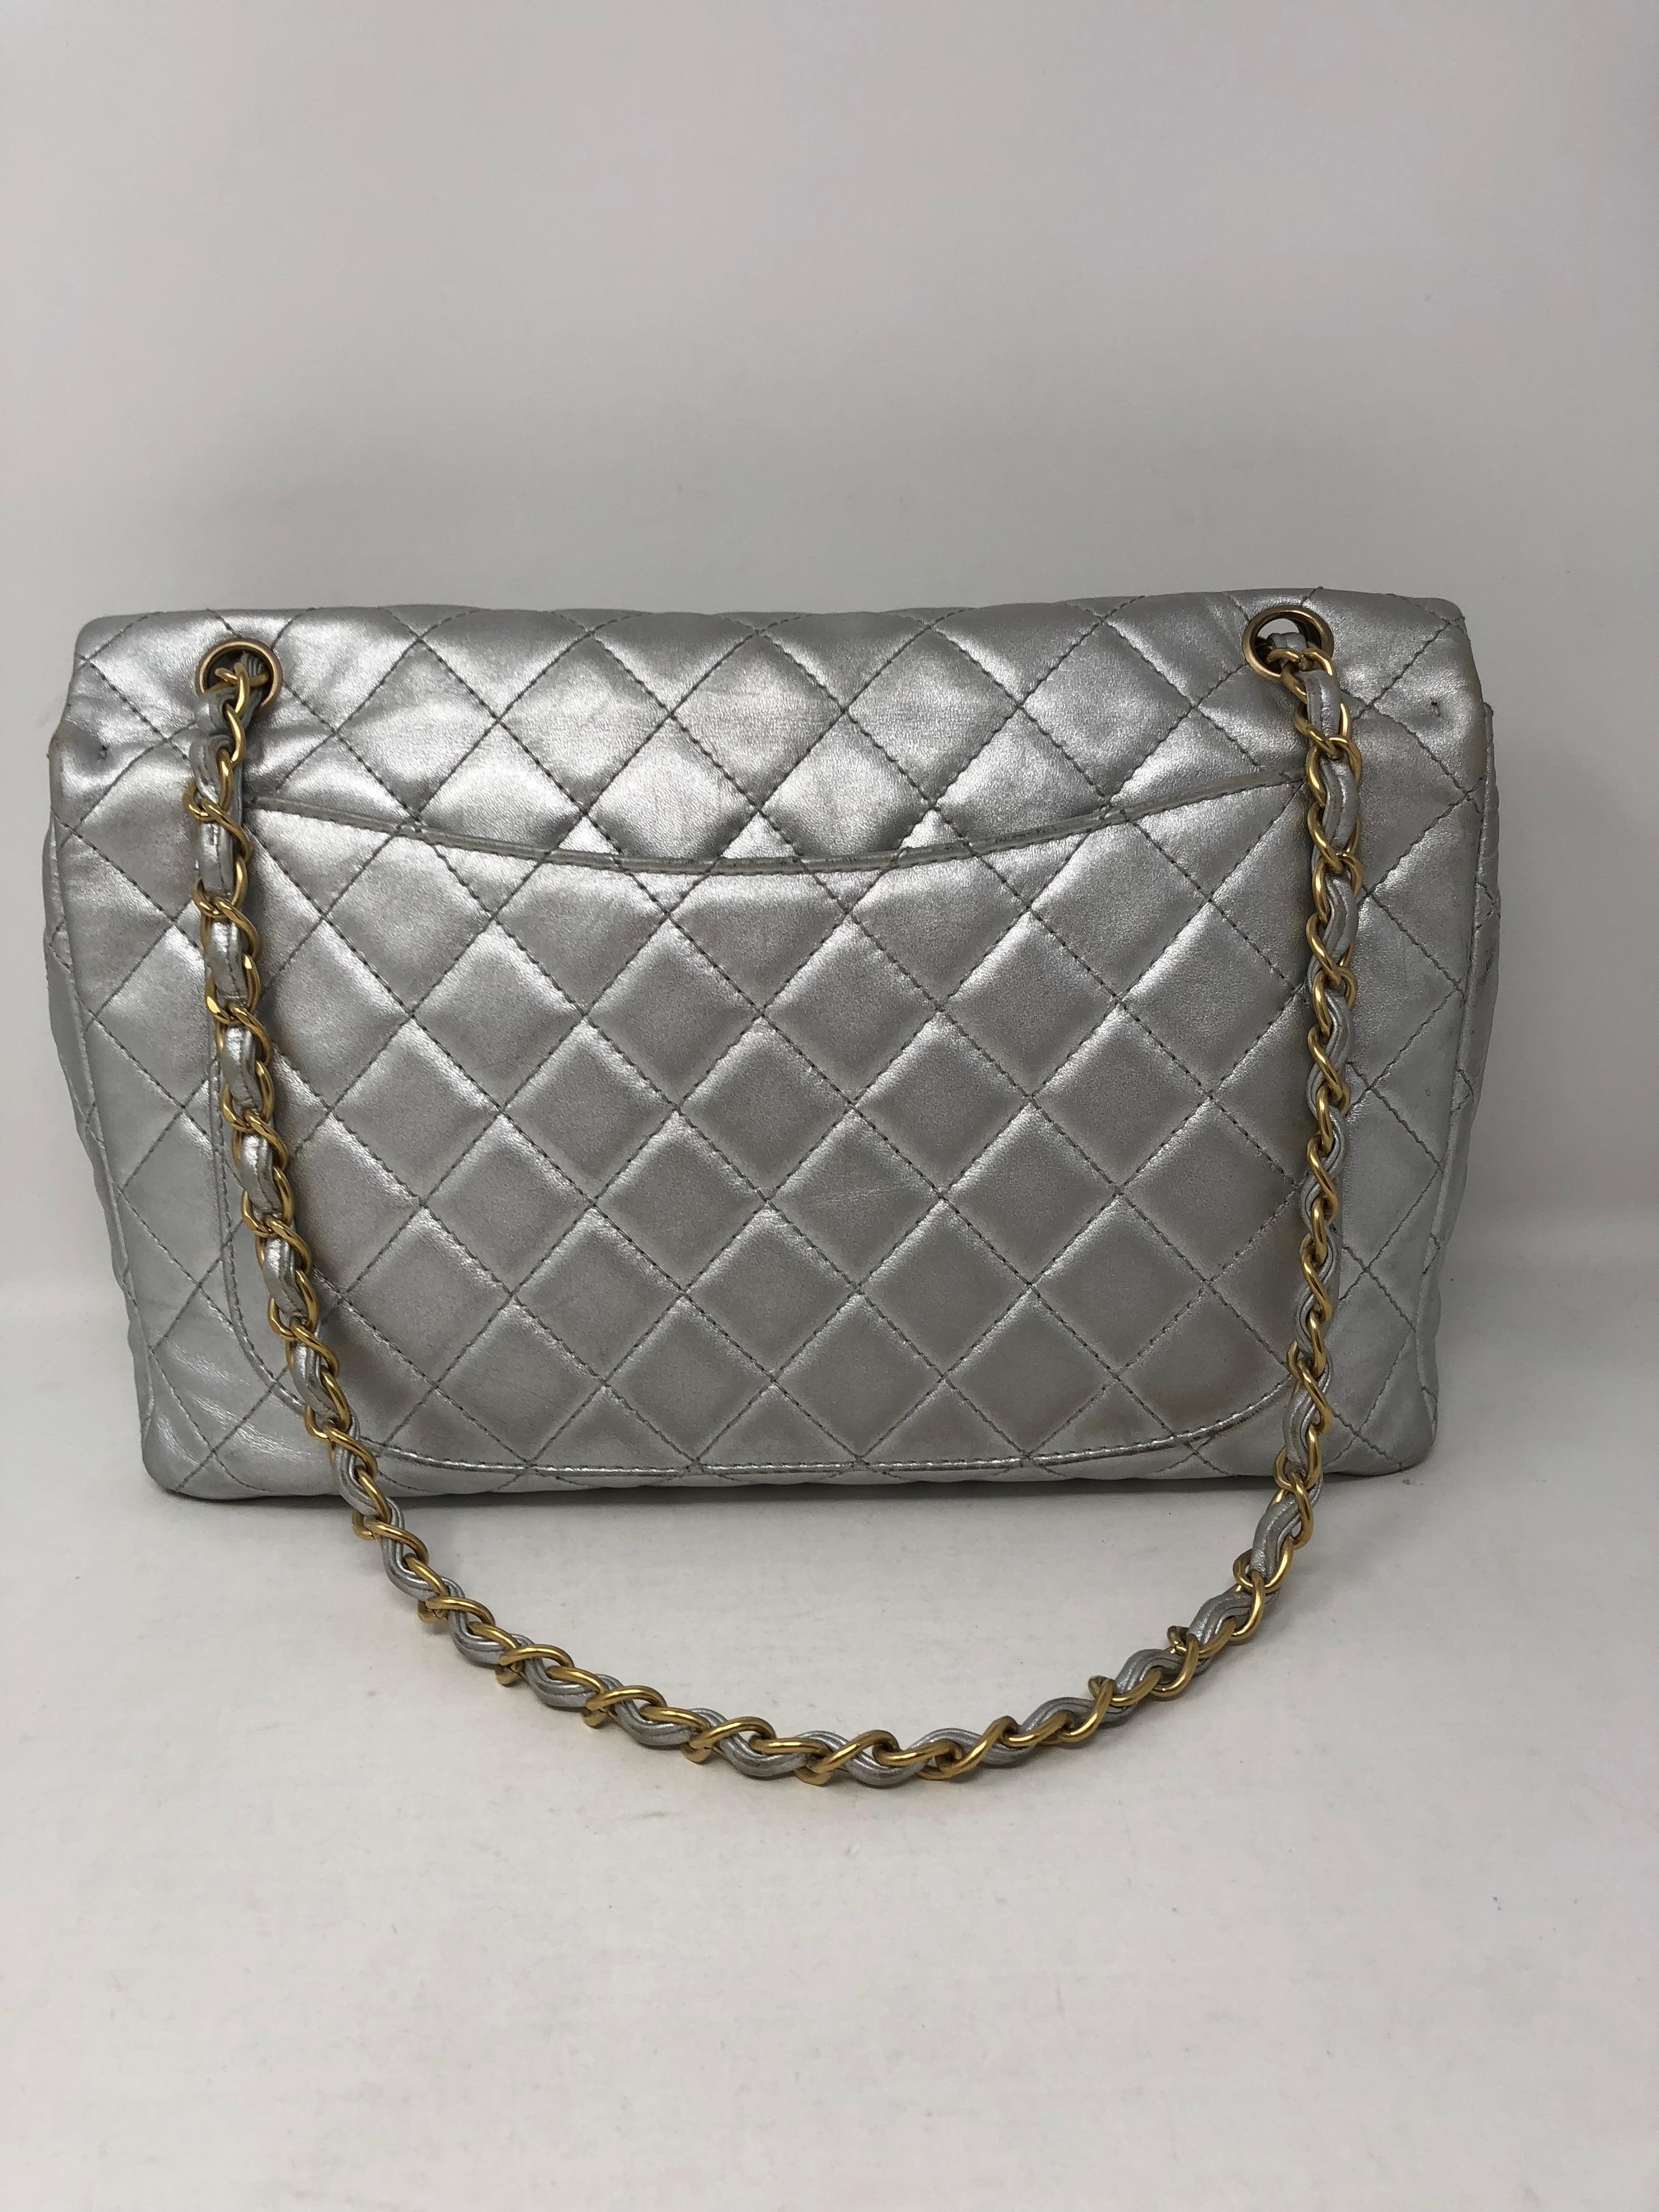 Chanel Silver Metallic Jumbo Bag 3